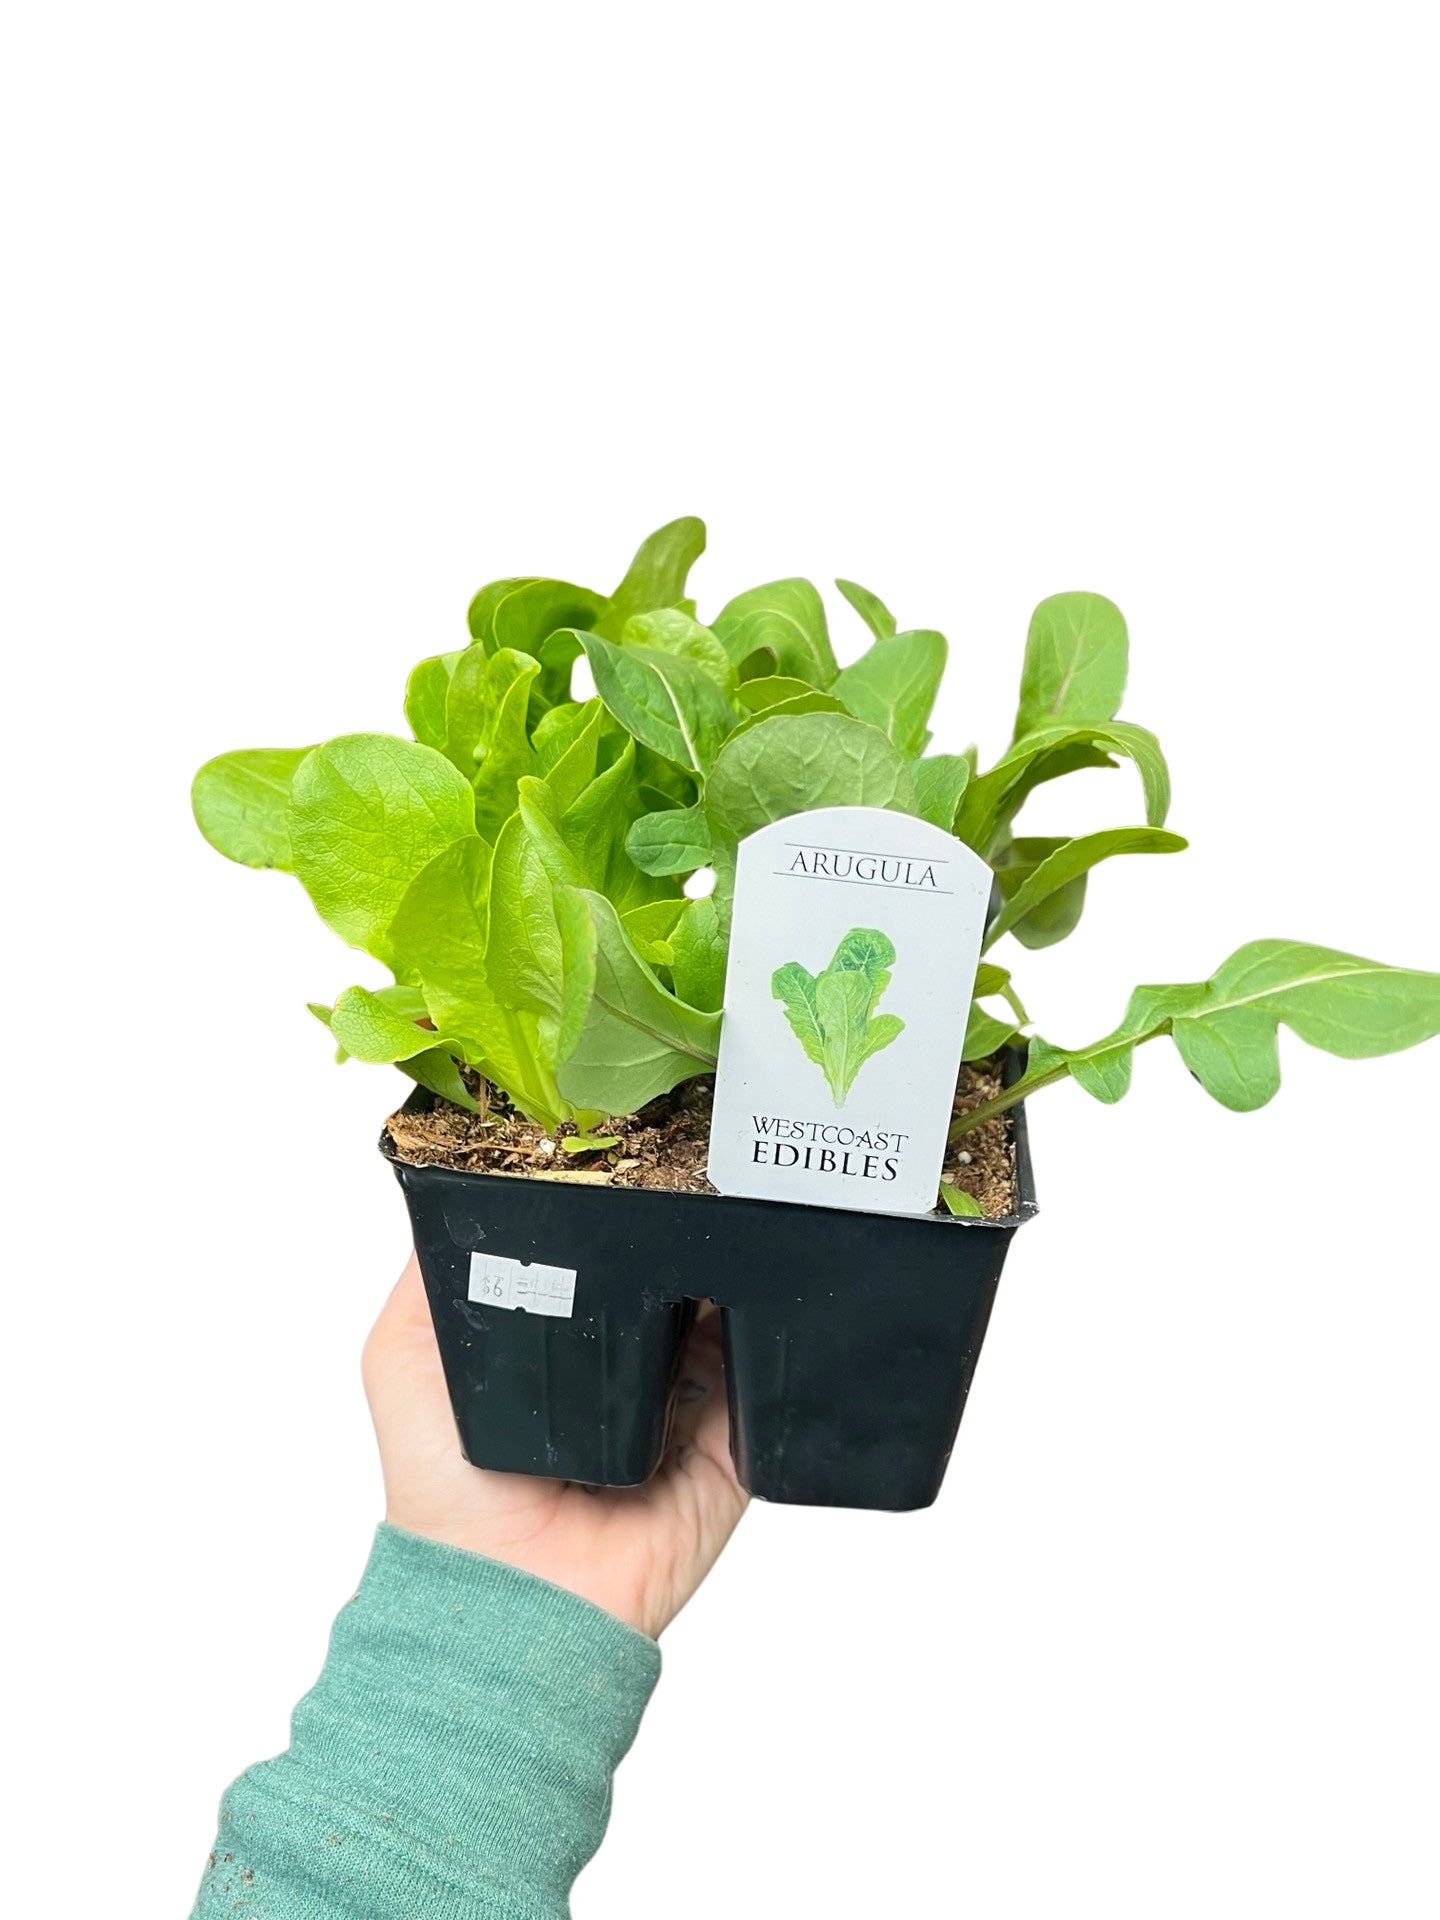 Lettuce | Garden Seedling